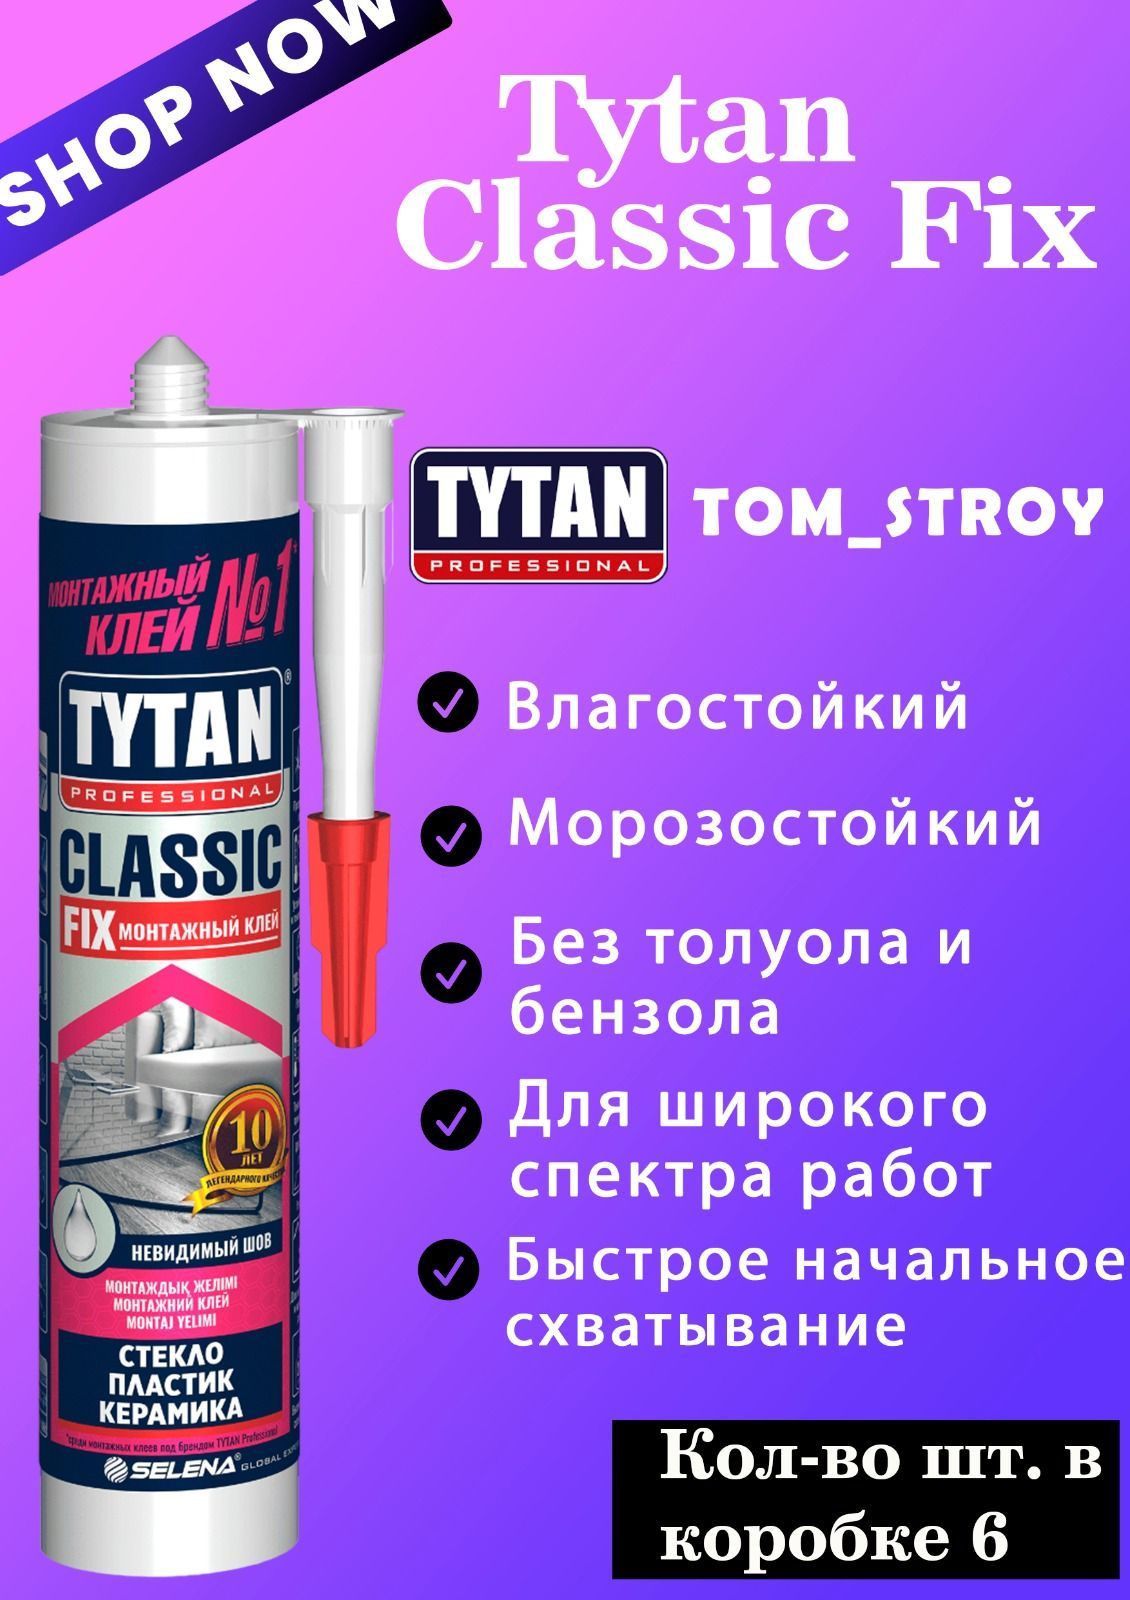 Tytan Classic Fix монтажный клей. Клей монтажный Tytan CLASSICIX, 310мл. Tytan Classic Fix прозрачный 310 мл. Клей Tytan CLASSICFIX 310 мл прозрачный 62949 к2. Tytan classic fix 310 мл